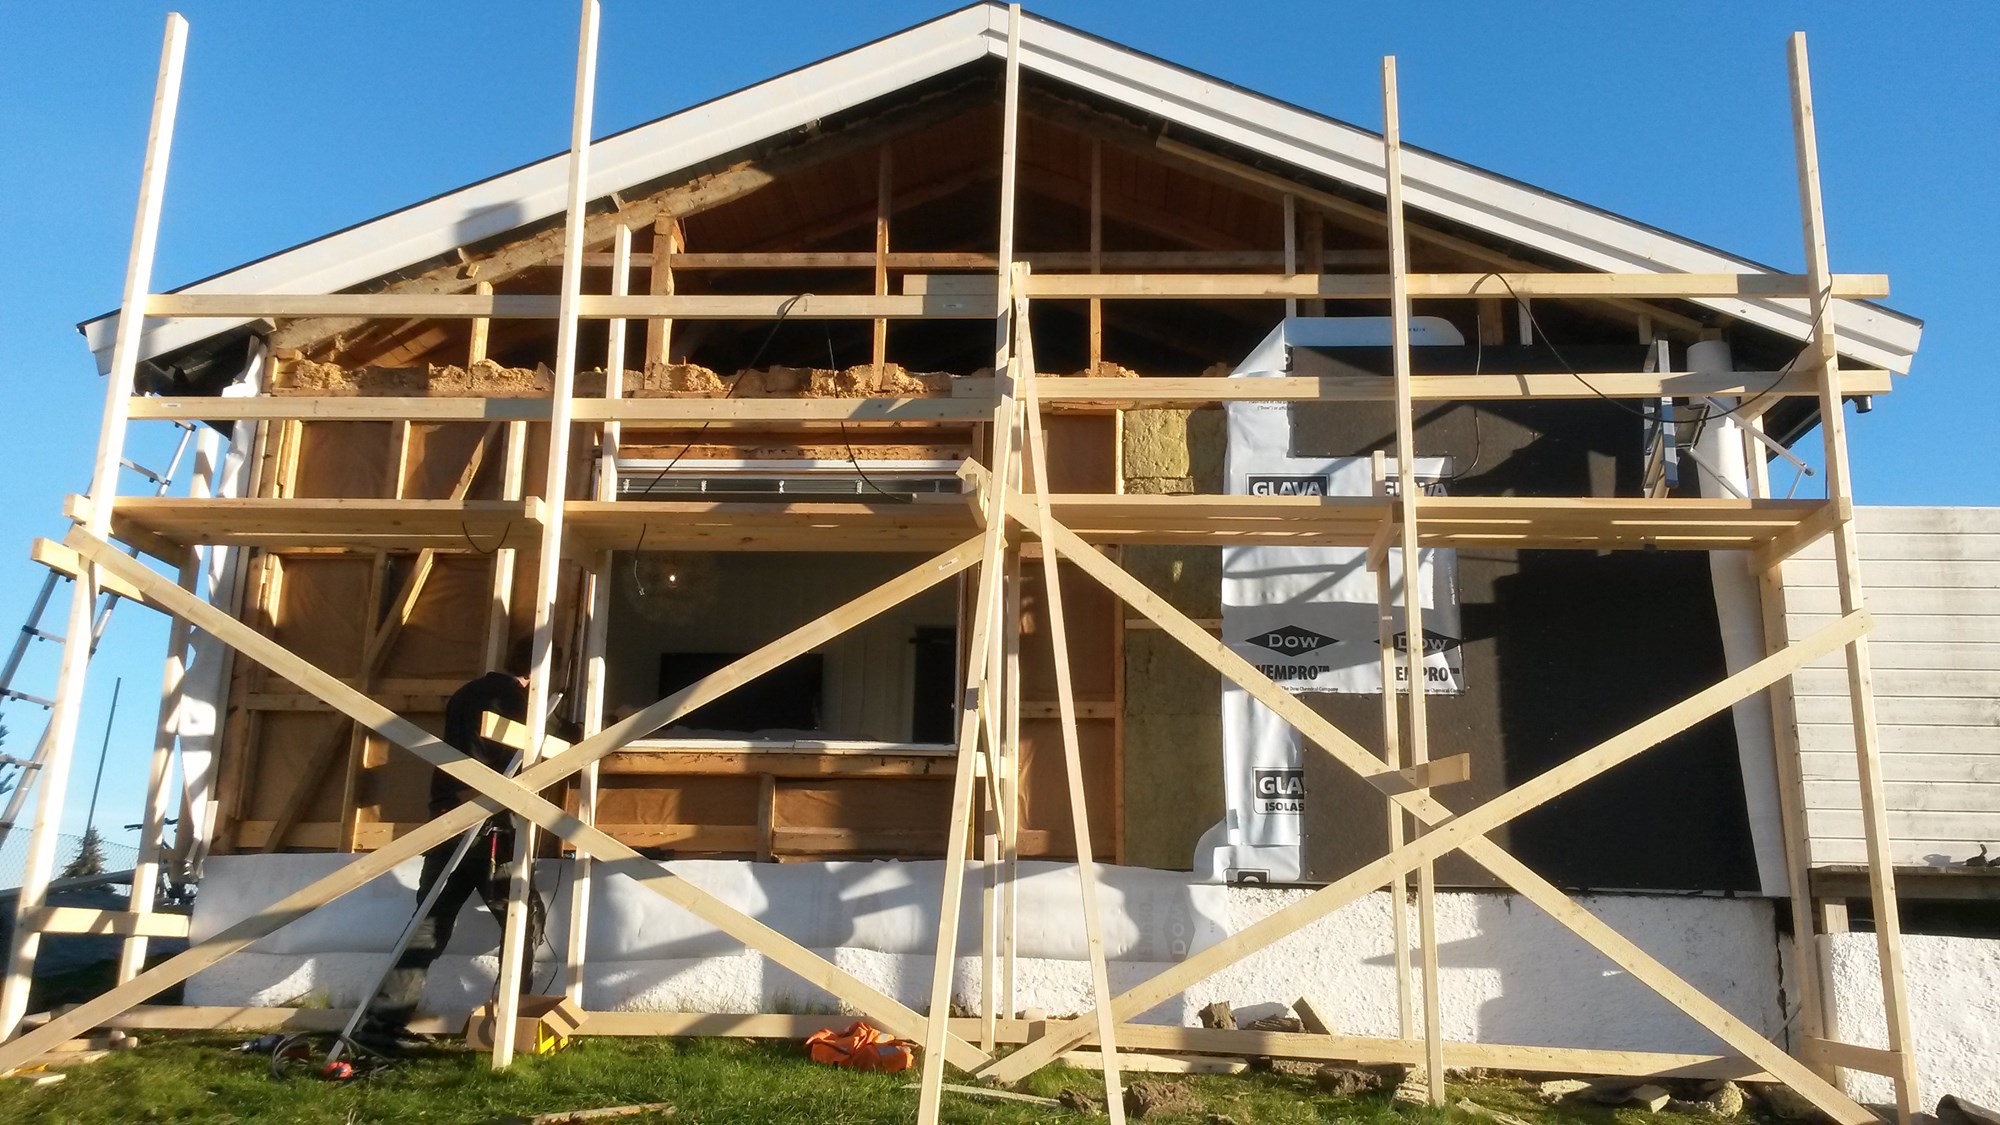 Oppussing av hus fra 1962 div store og små prosjekter. - 2015-10-18 15.51.10.jpg - Krissern90